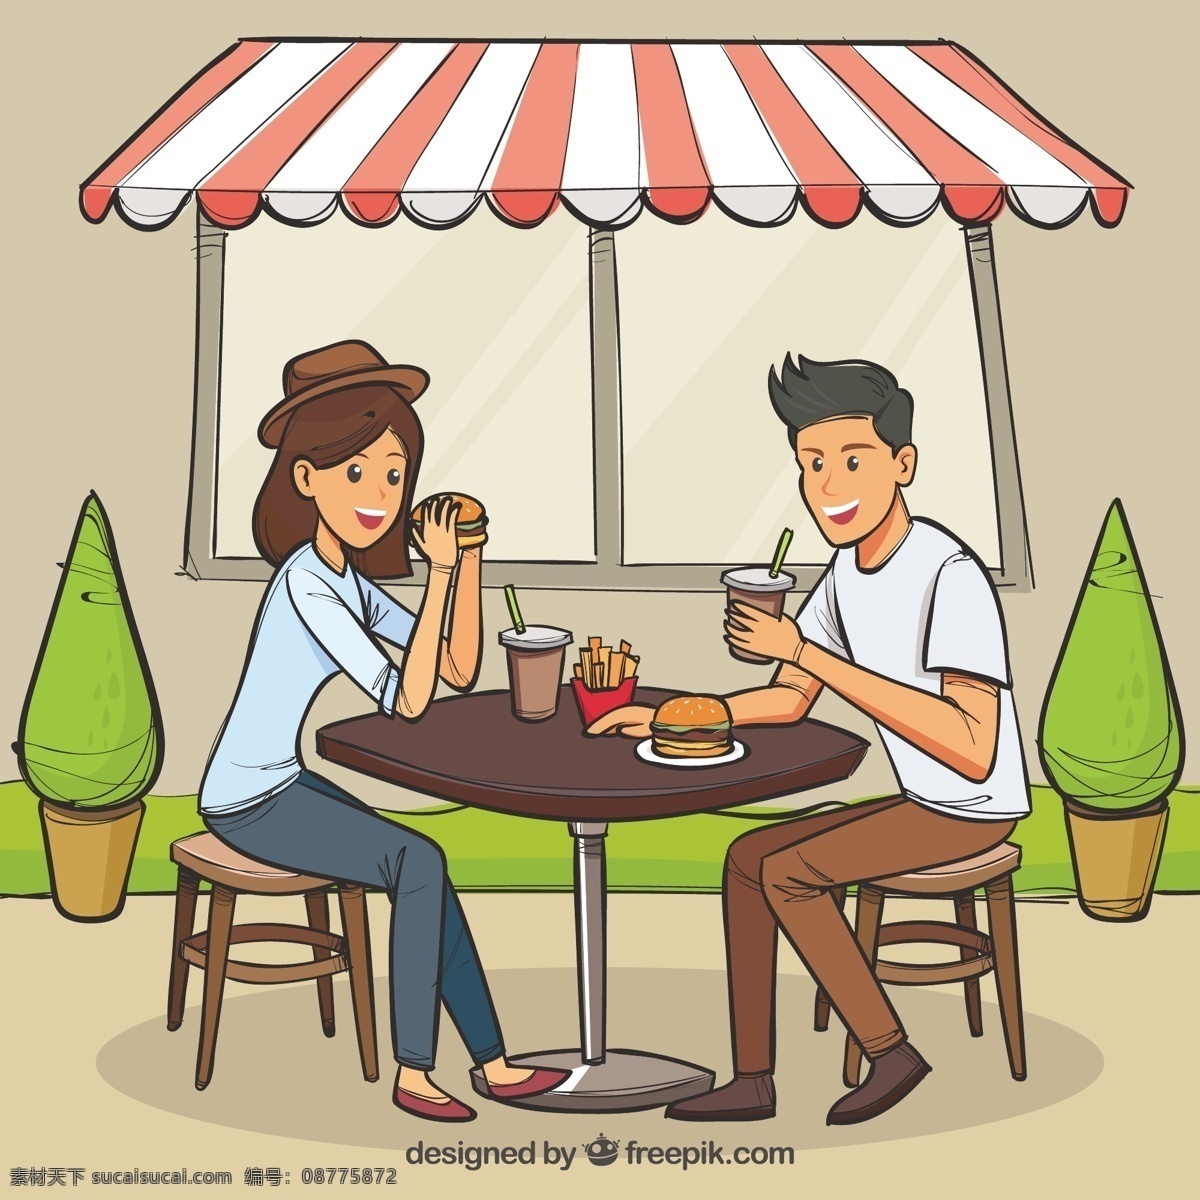 手绘 年轻 夫妇 户外 吃 汉堡 食物 人 手 餐馆 男人 卡通 桌子 葡萄酒 微笑 快乐 房间 情侣 饮料 快餐 帽子 绘画 现代 晚餐